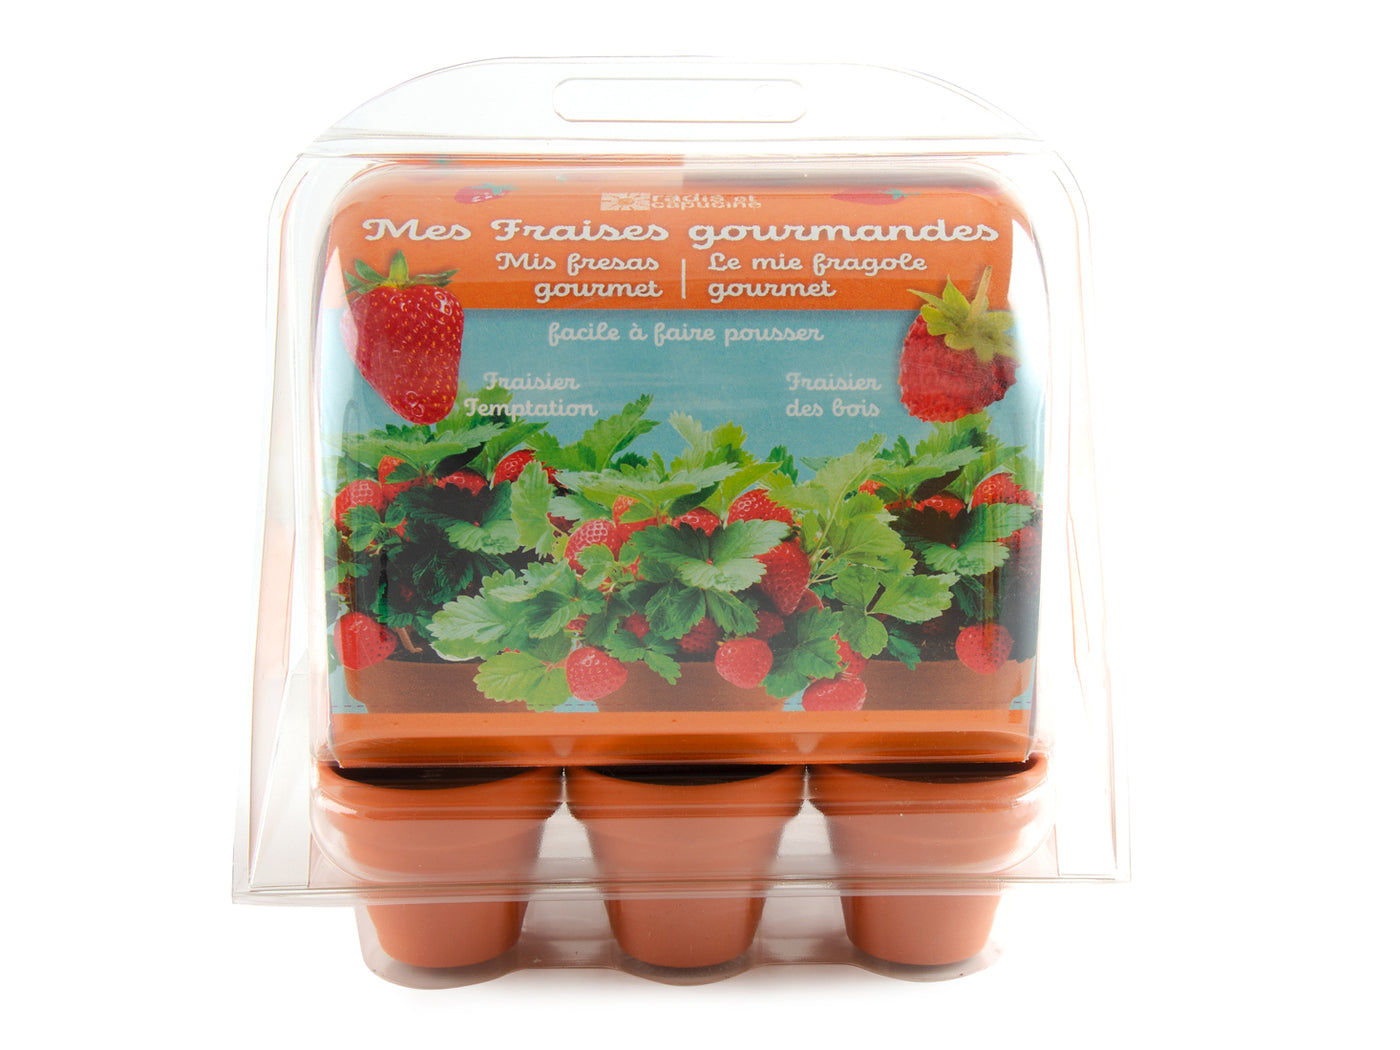 Mini-serre 6 pots avec fraises à faire pousser